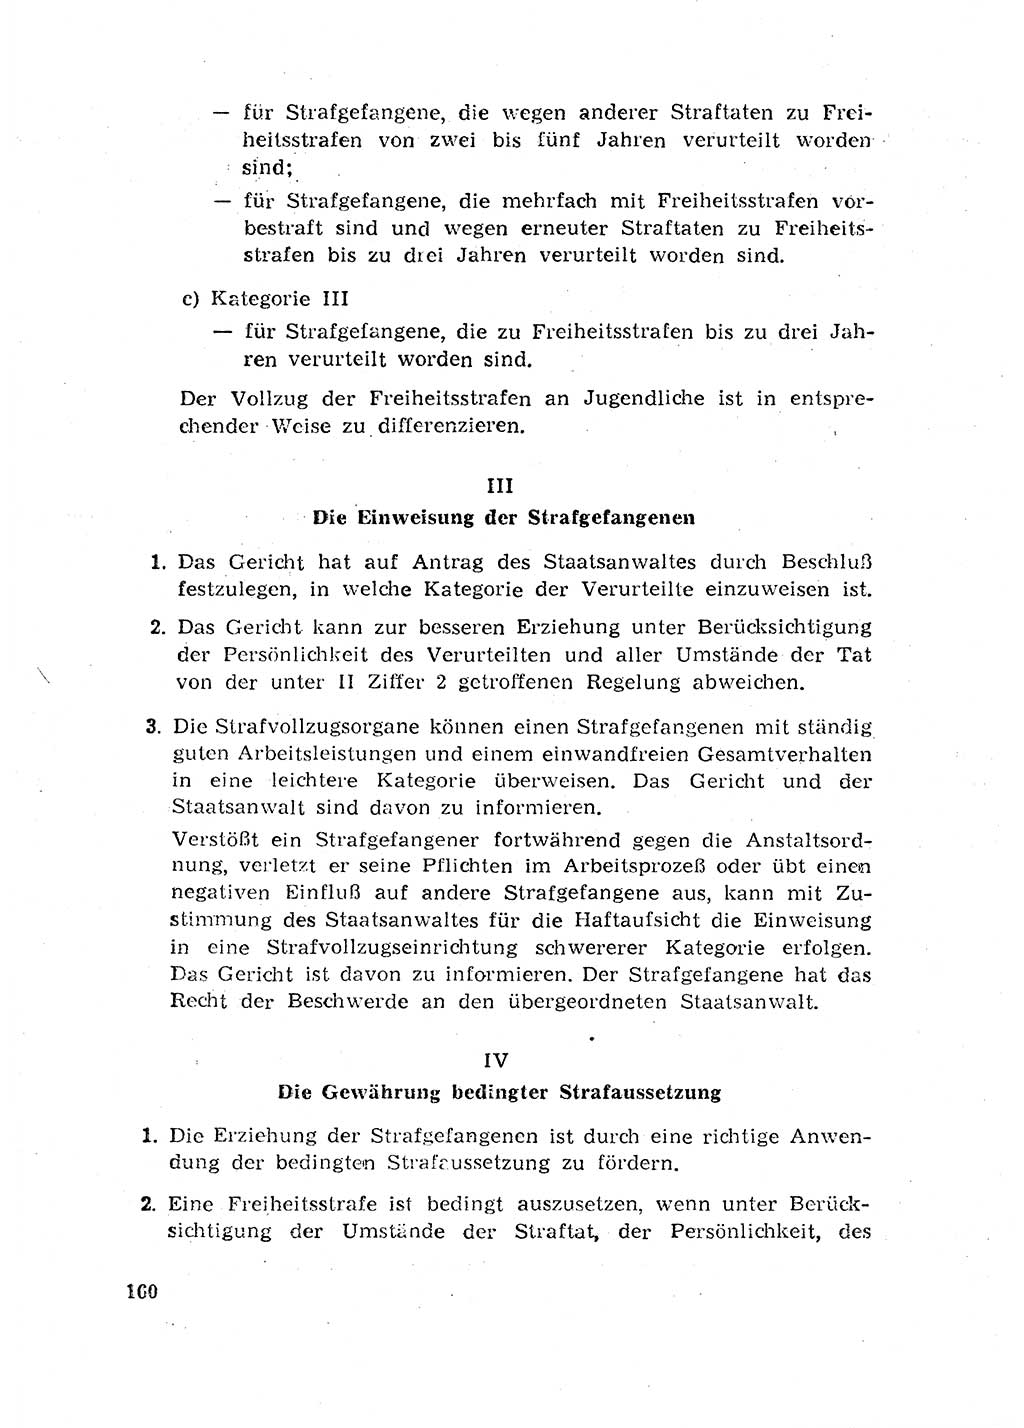 Rechtspflegeerlaß [Deutsche Demokratische Republik (DDR)] 1963, Seite 160 (R.-Pfl.-Erl. DDR 1963, S. 160)